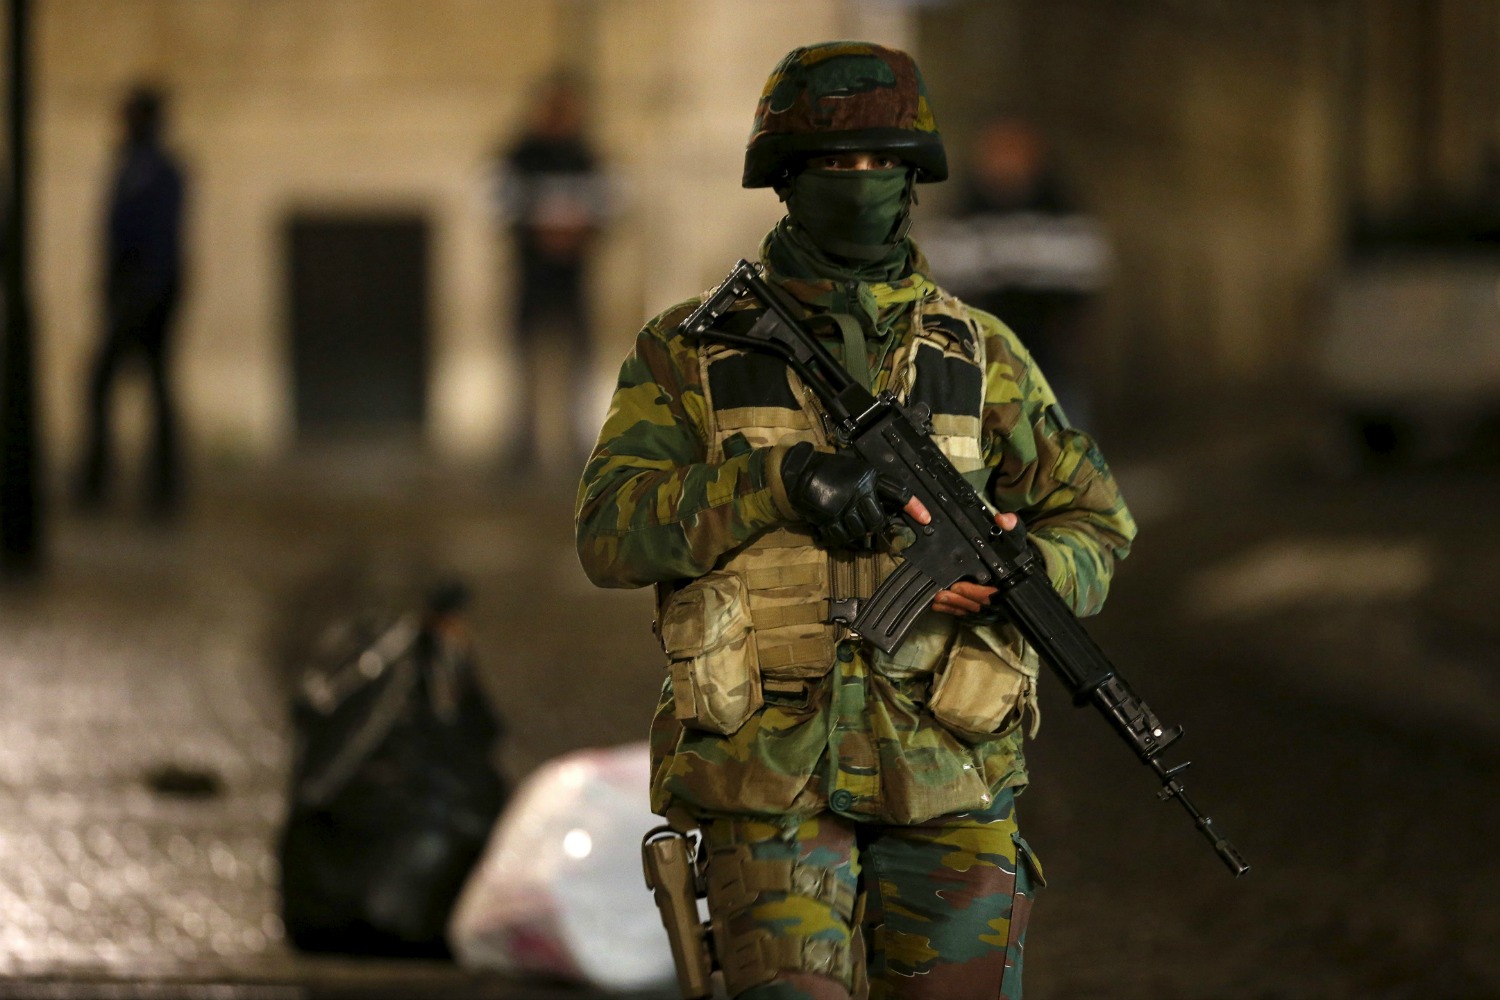 Bruselas bajo 'riesgo extremo' de atentado lanza una gran operación policial